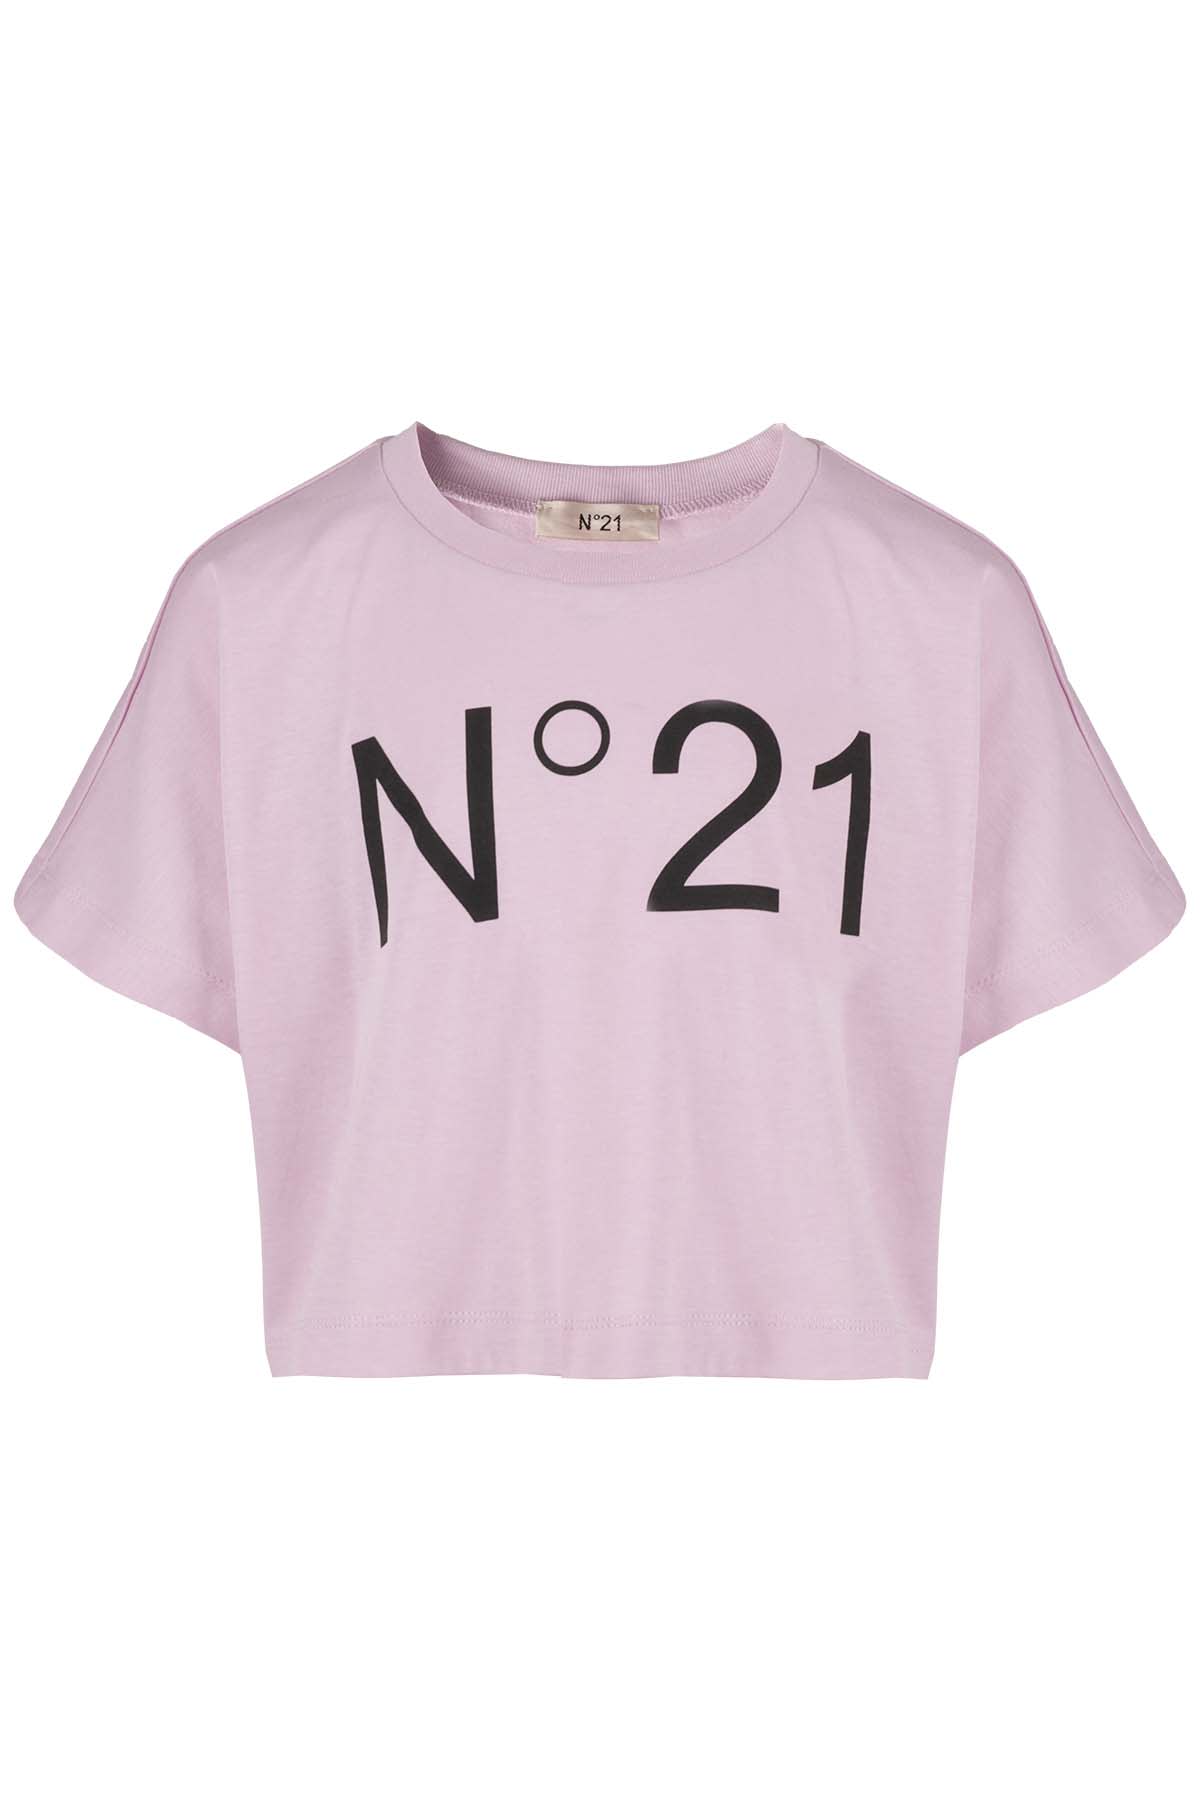 N°21 Kids' Maglietta In Lilac Pink